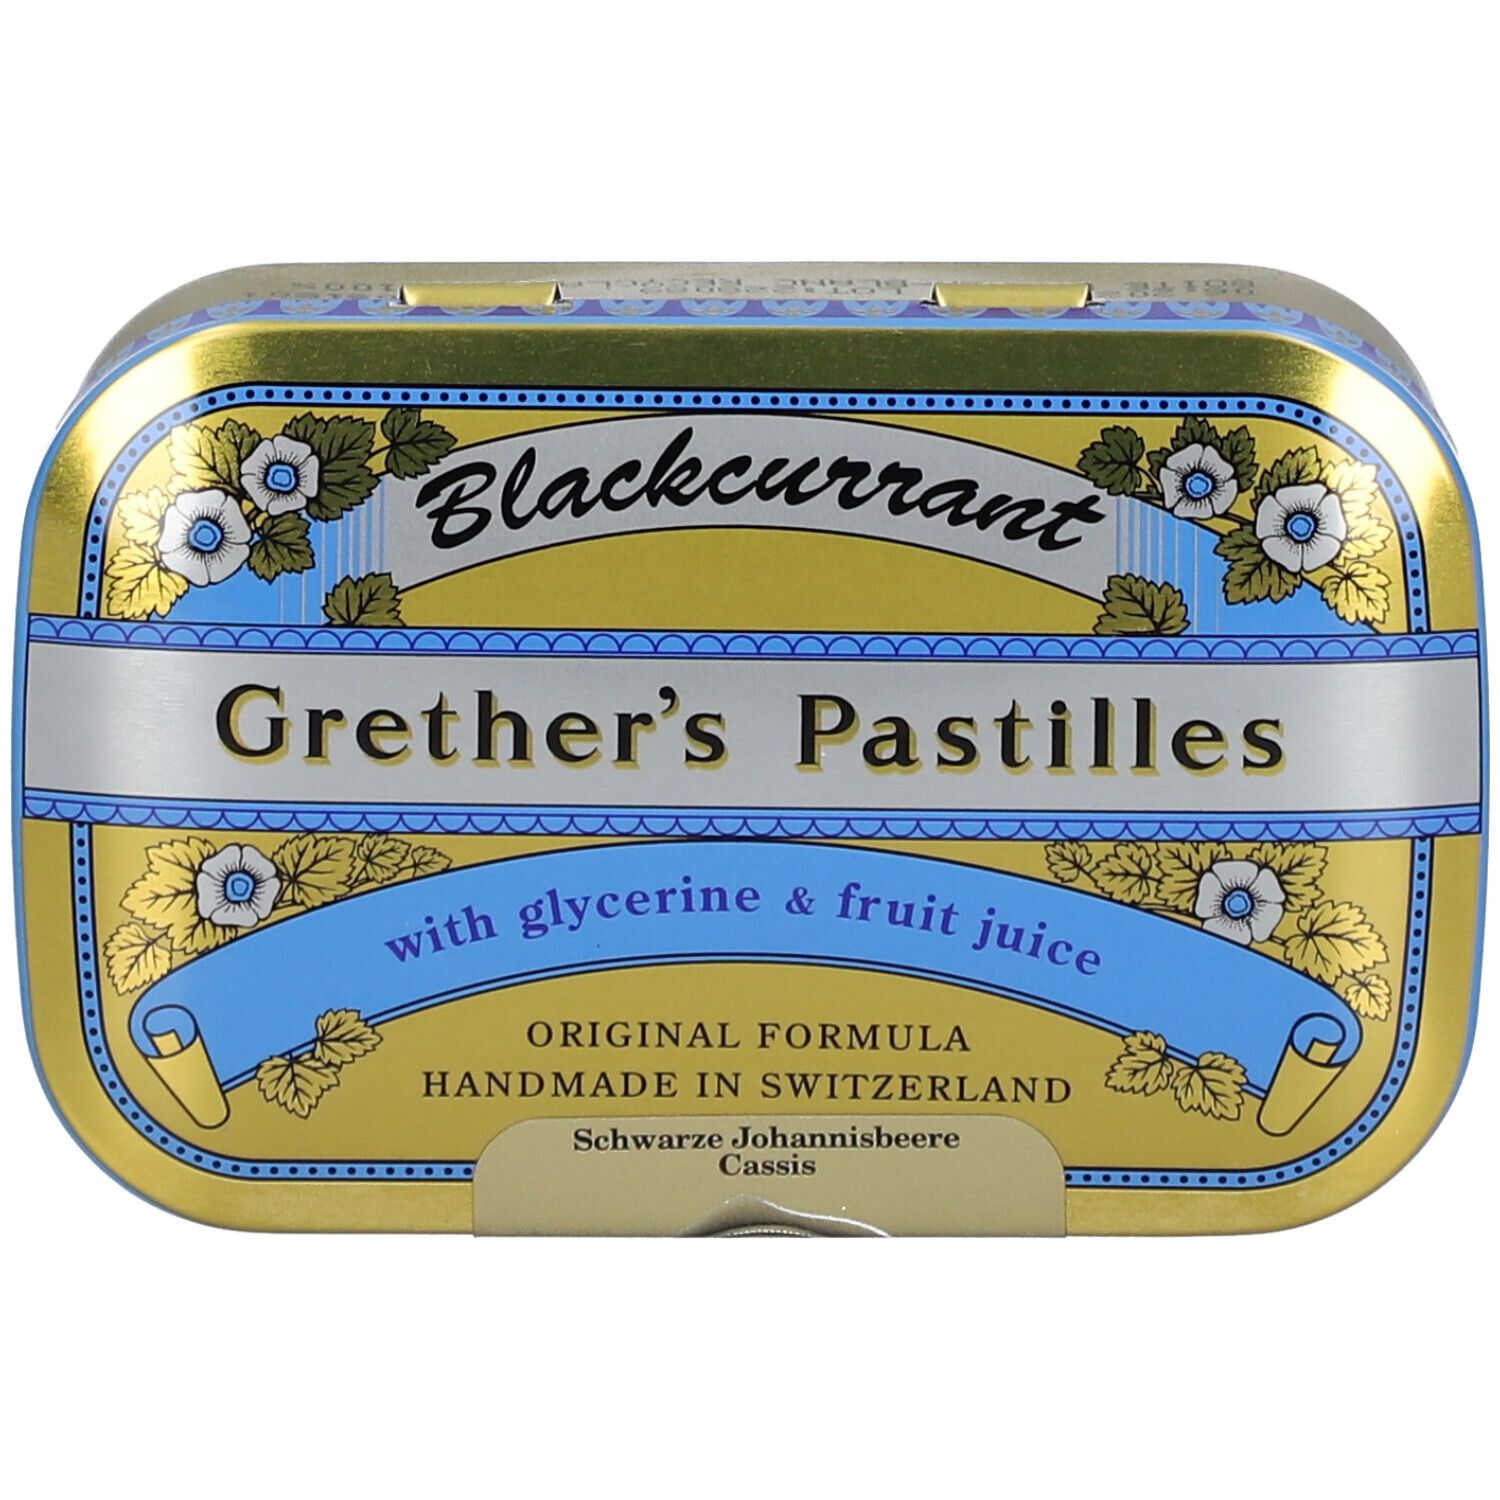 Grether's Pastilles Blackcurrant